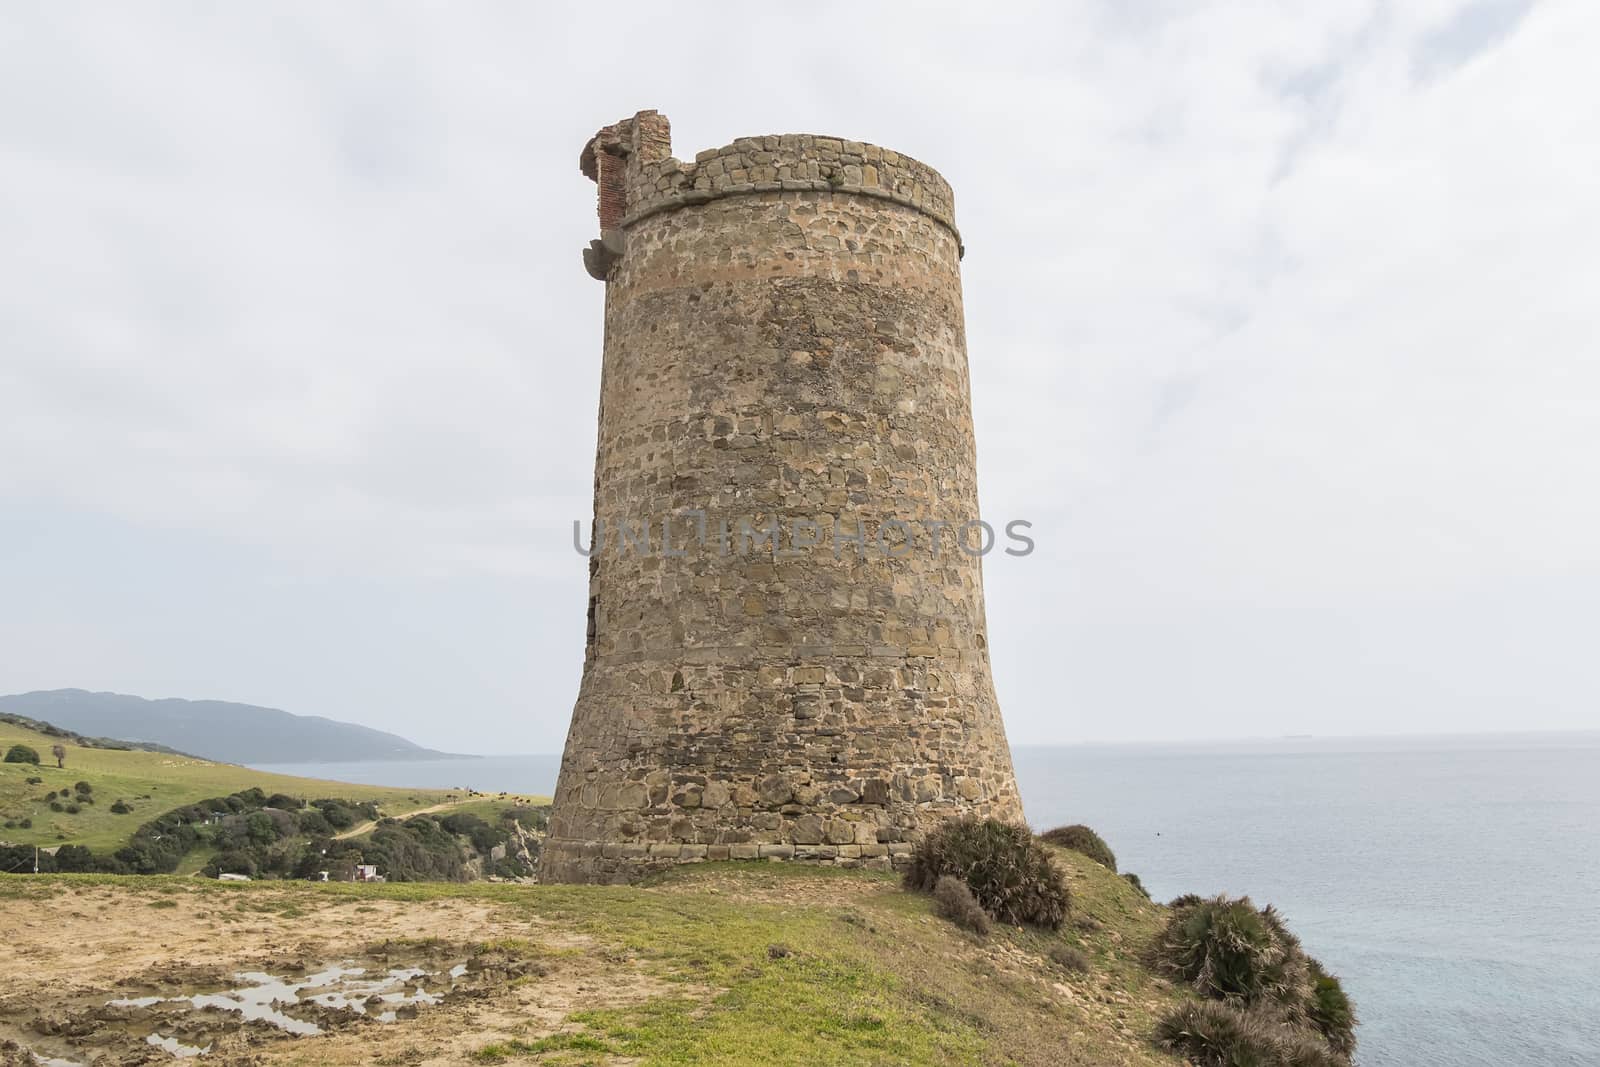 Guadalmesi watchtower, Strait Natural Park, Cadiz, Spain by max8xam